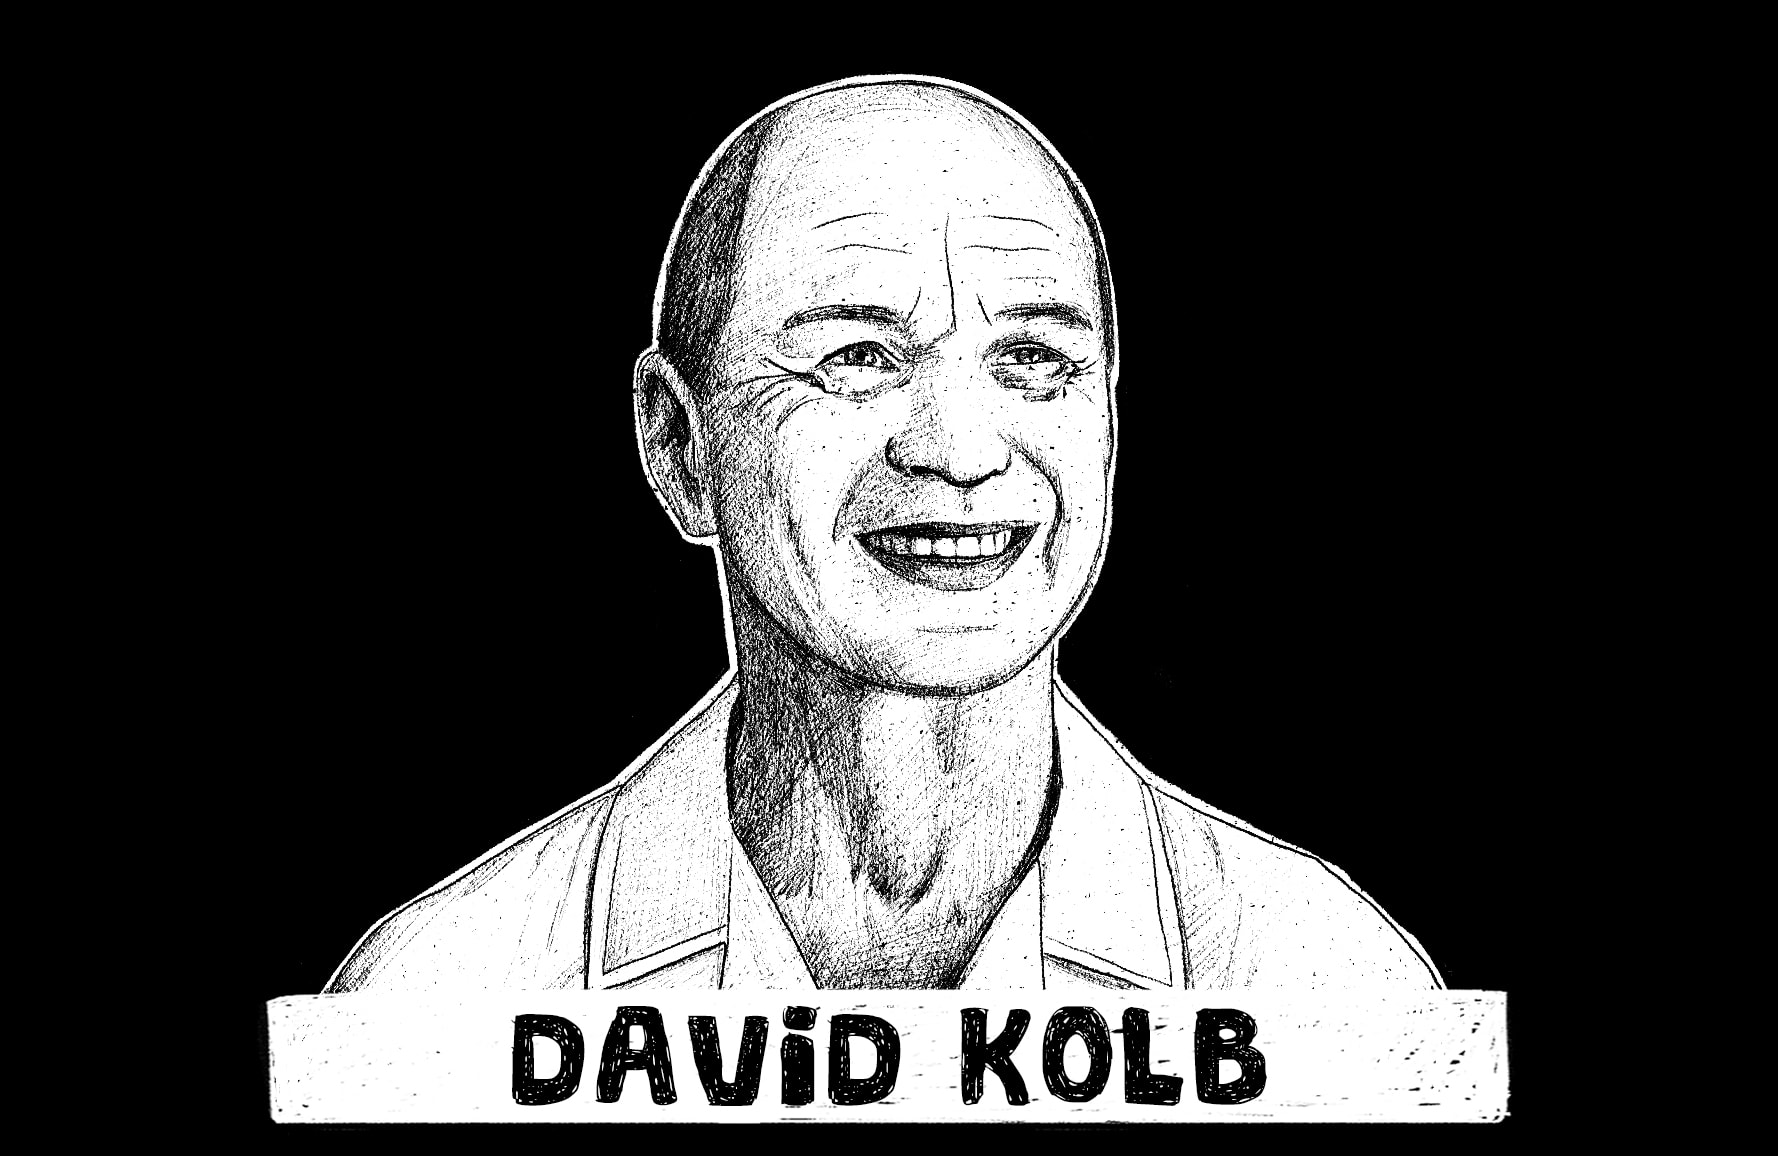 David Kolb